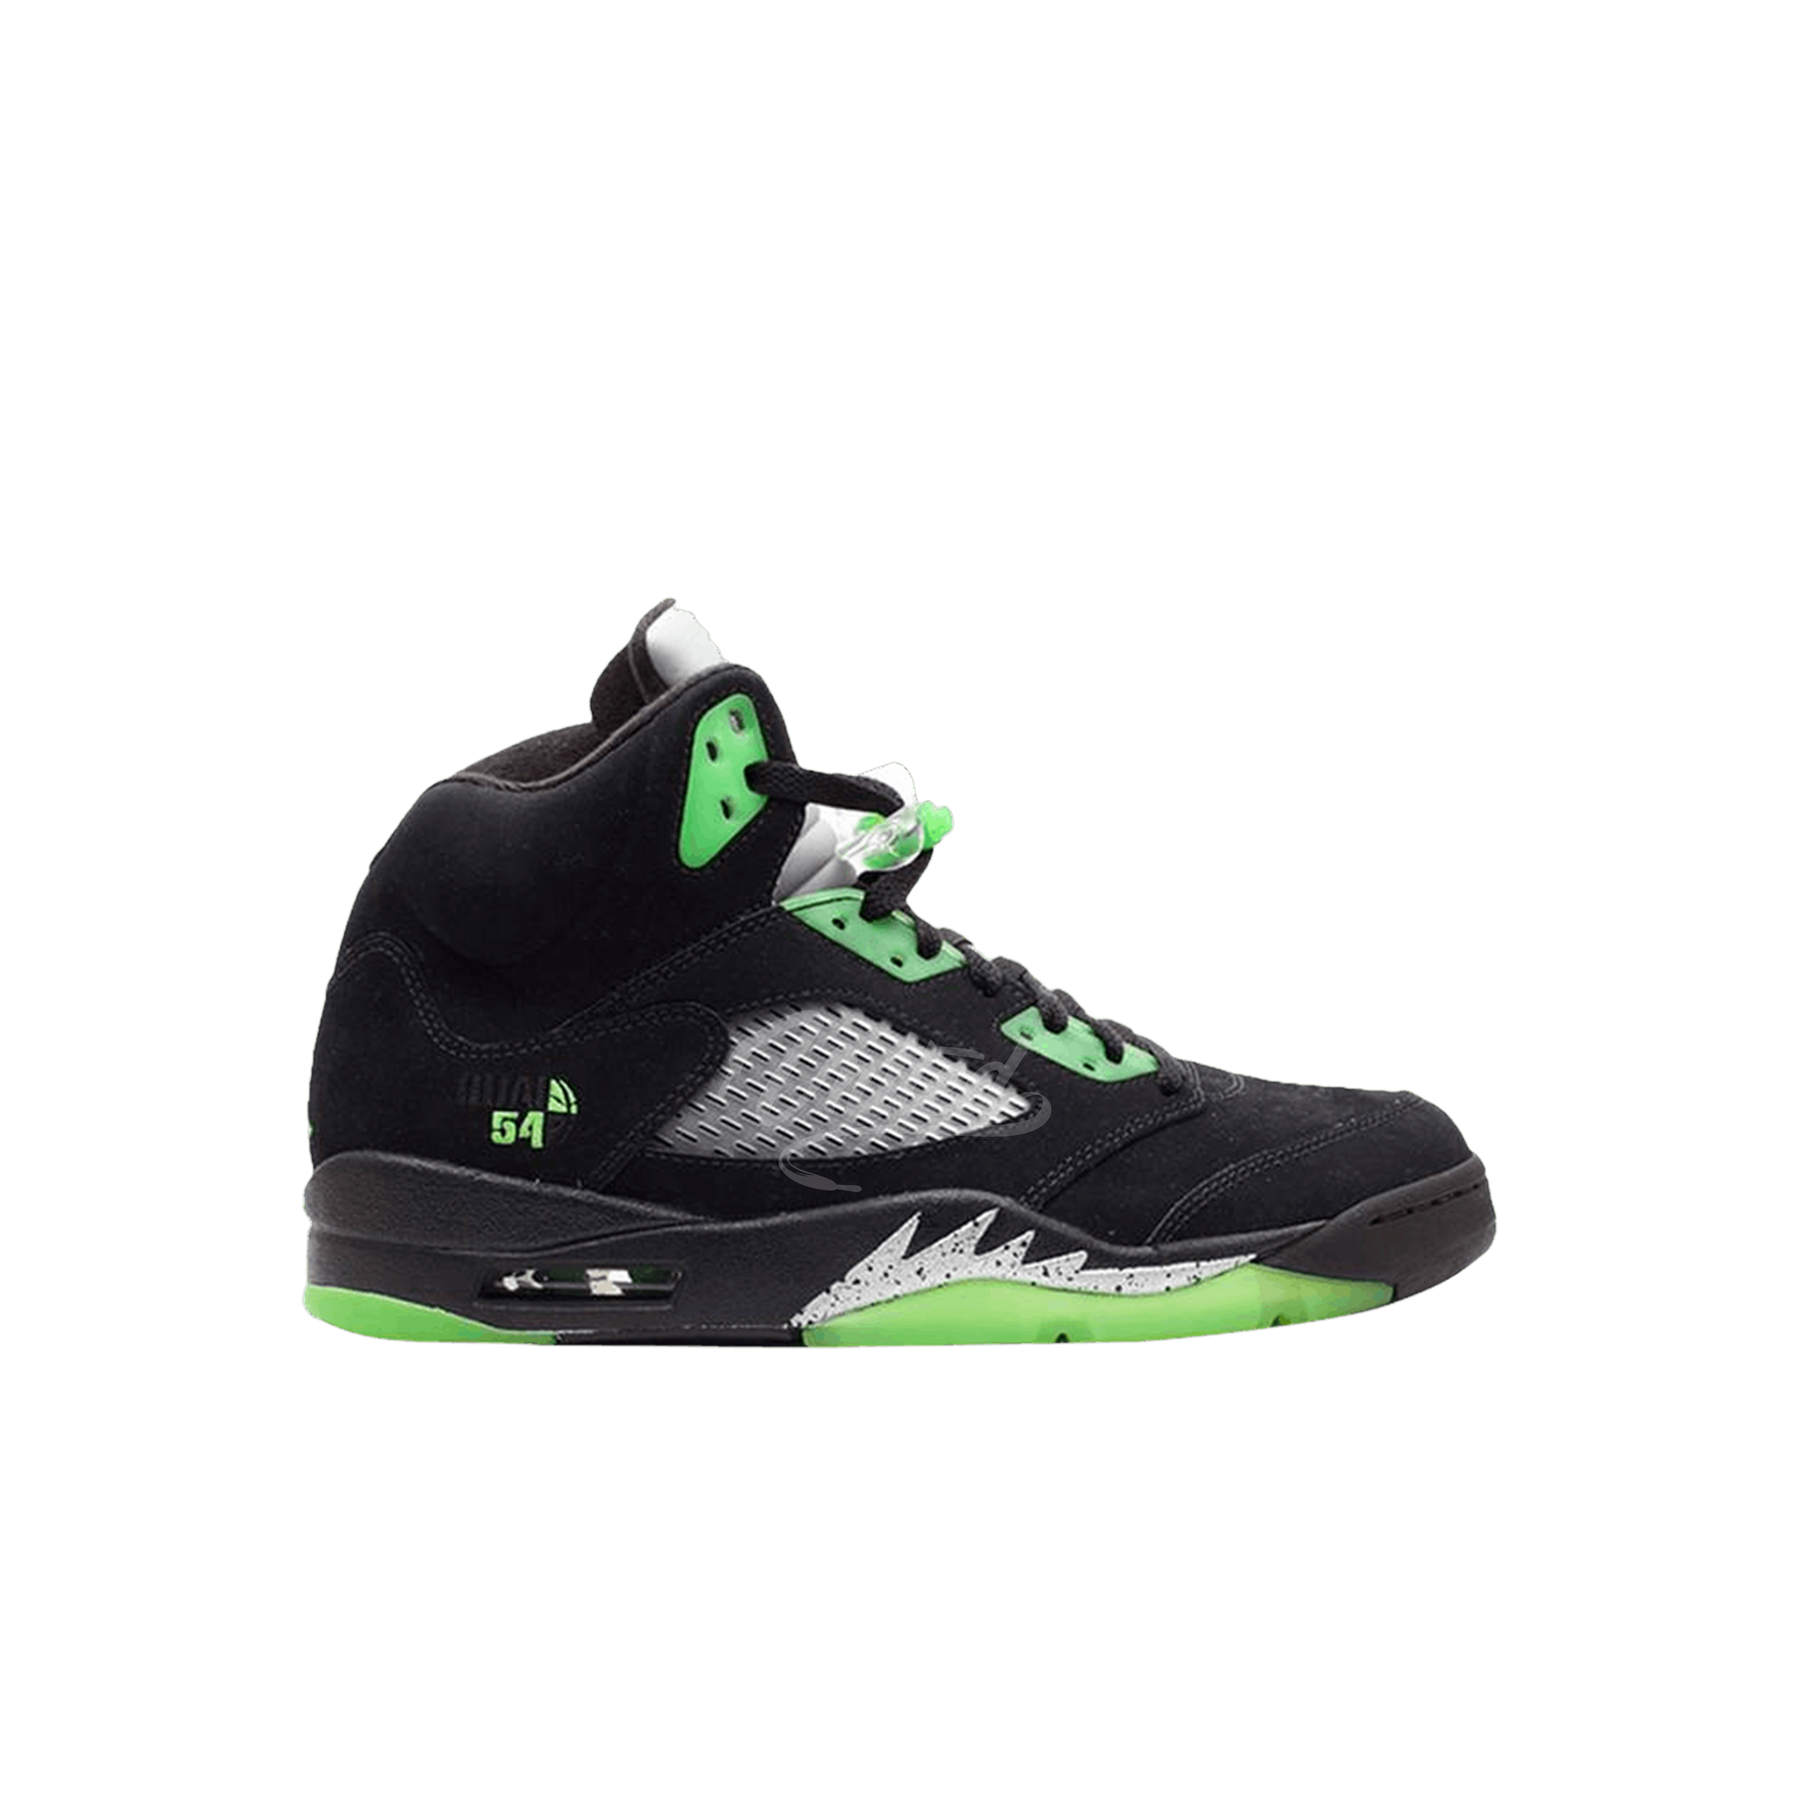 Air Jordan 5 Quai 54 PE "Black/Green"